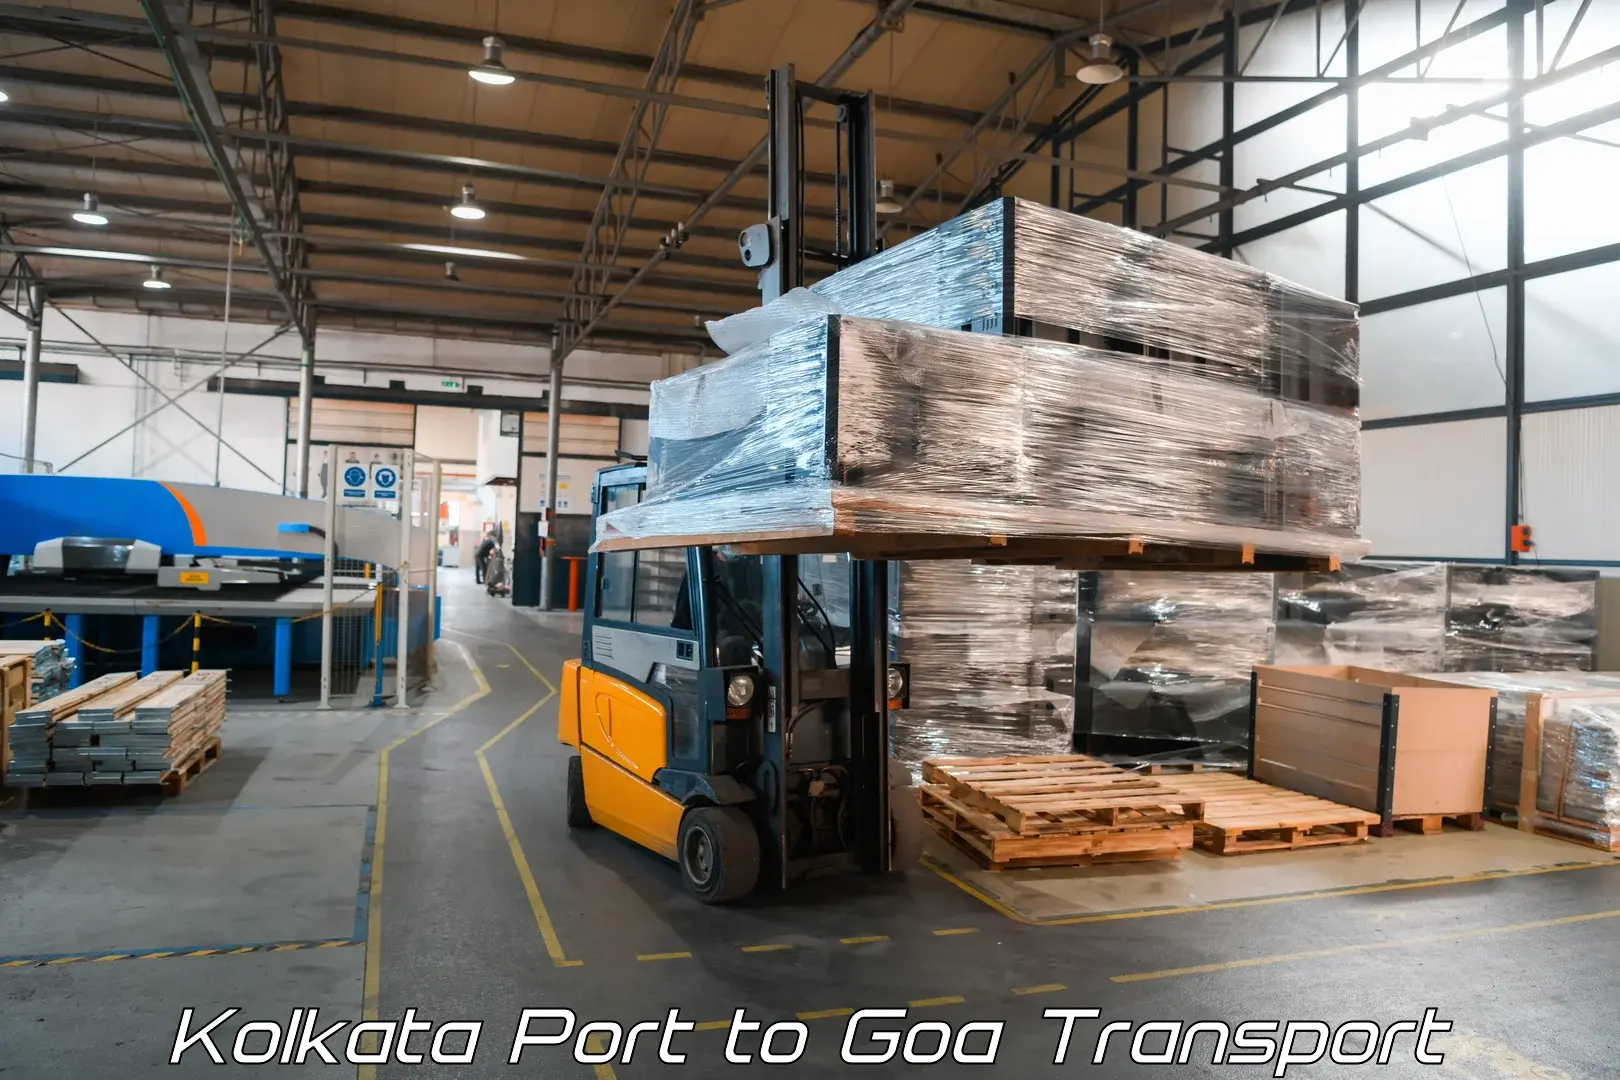 Goods delivery service Kolkata Port to Goa